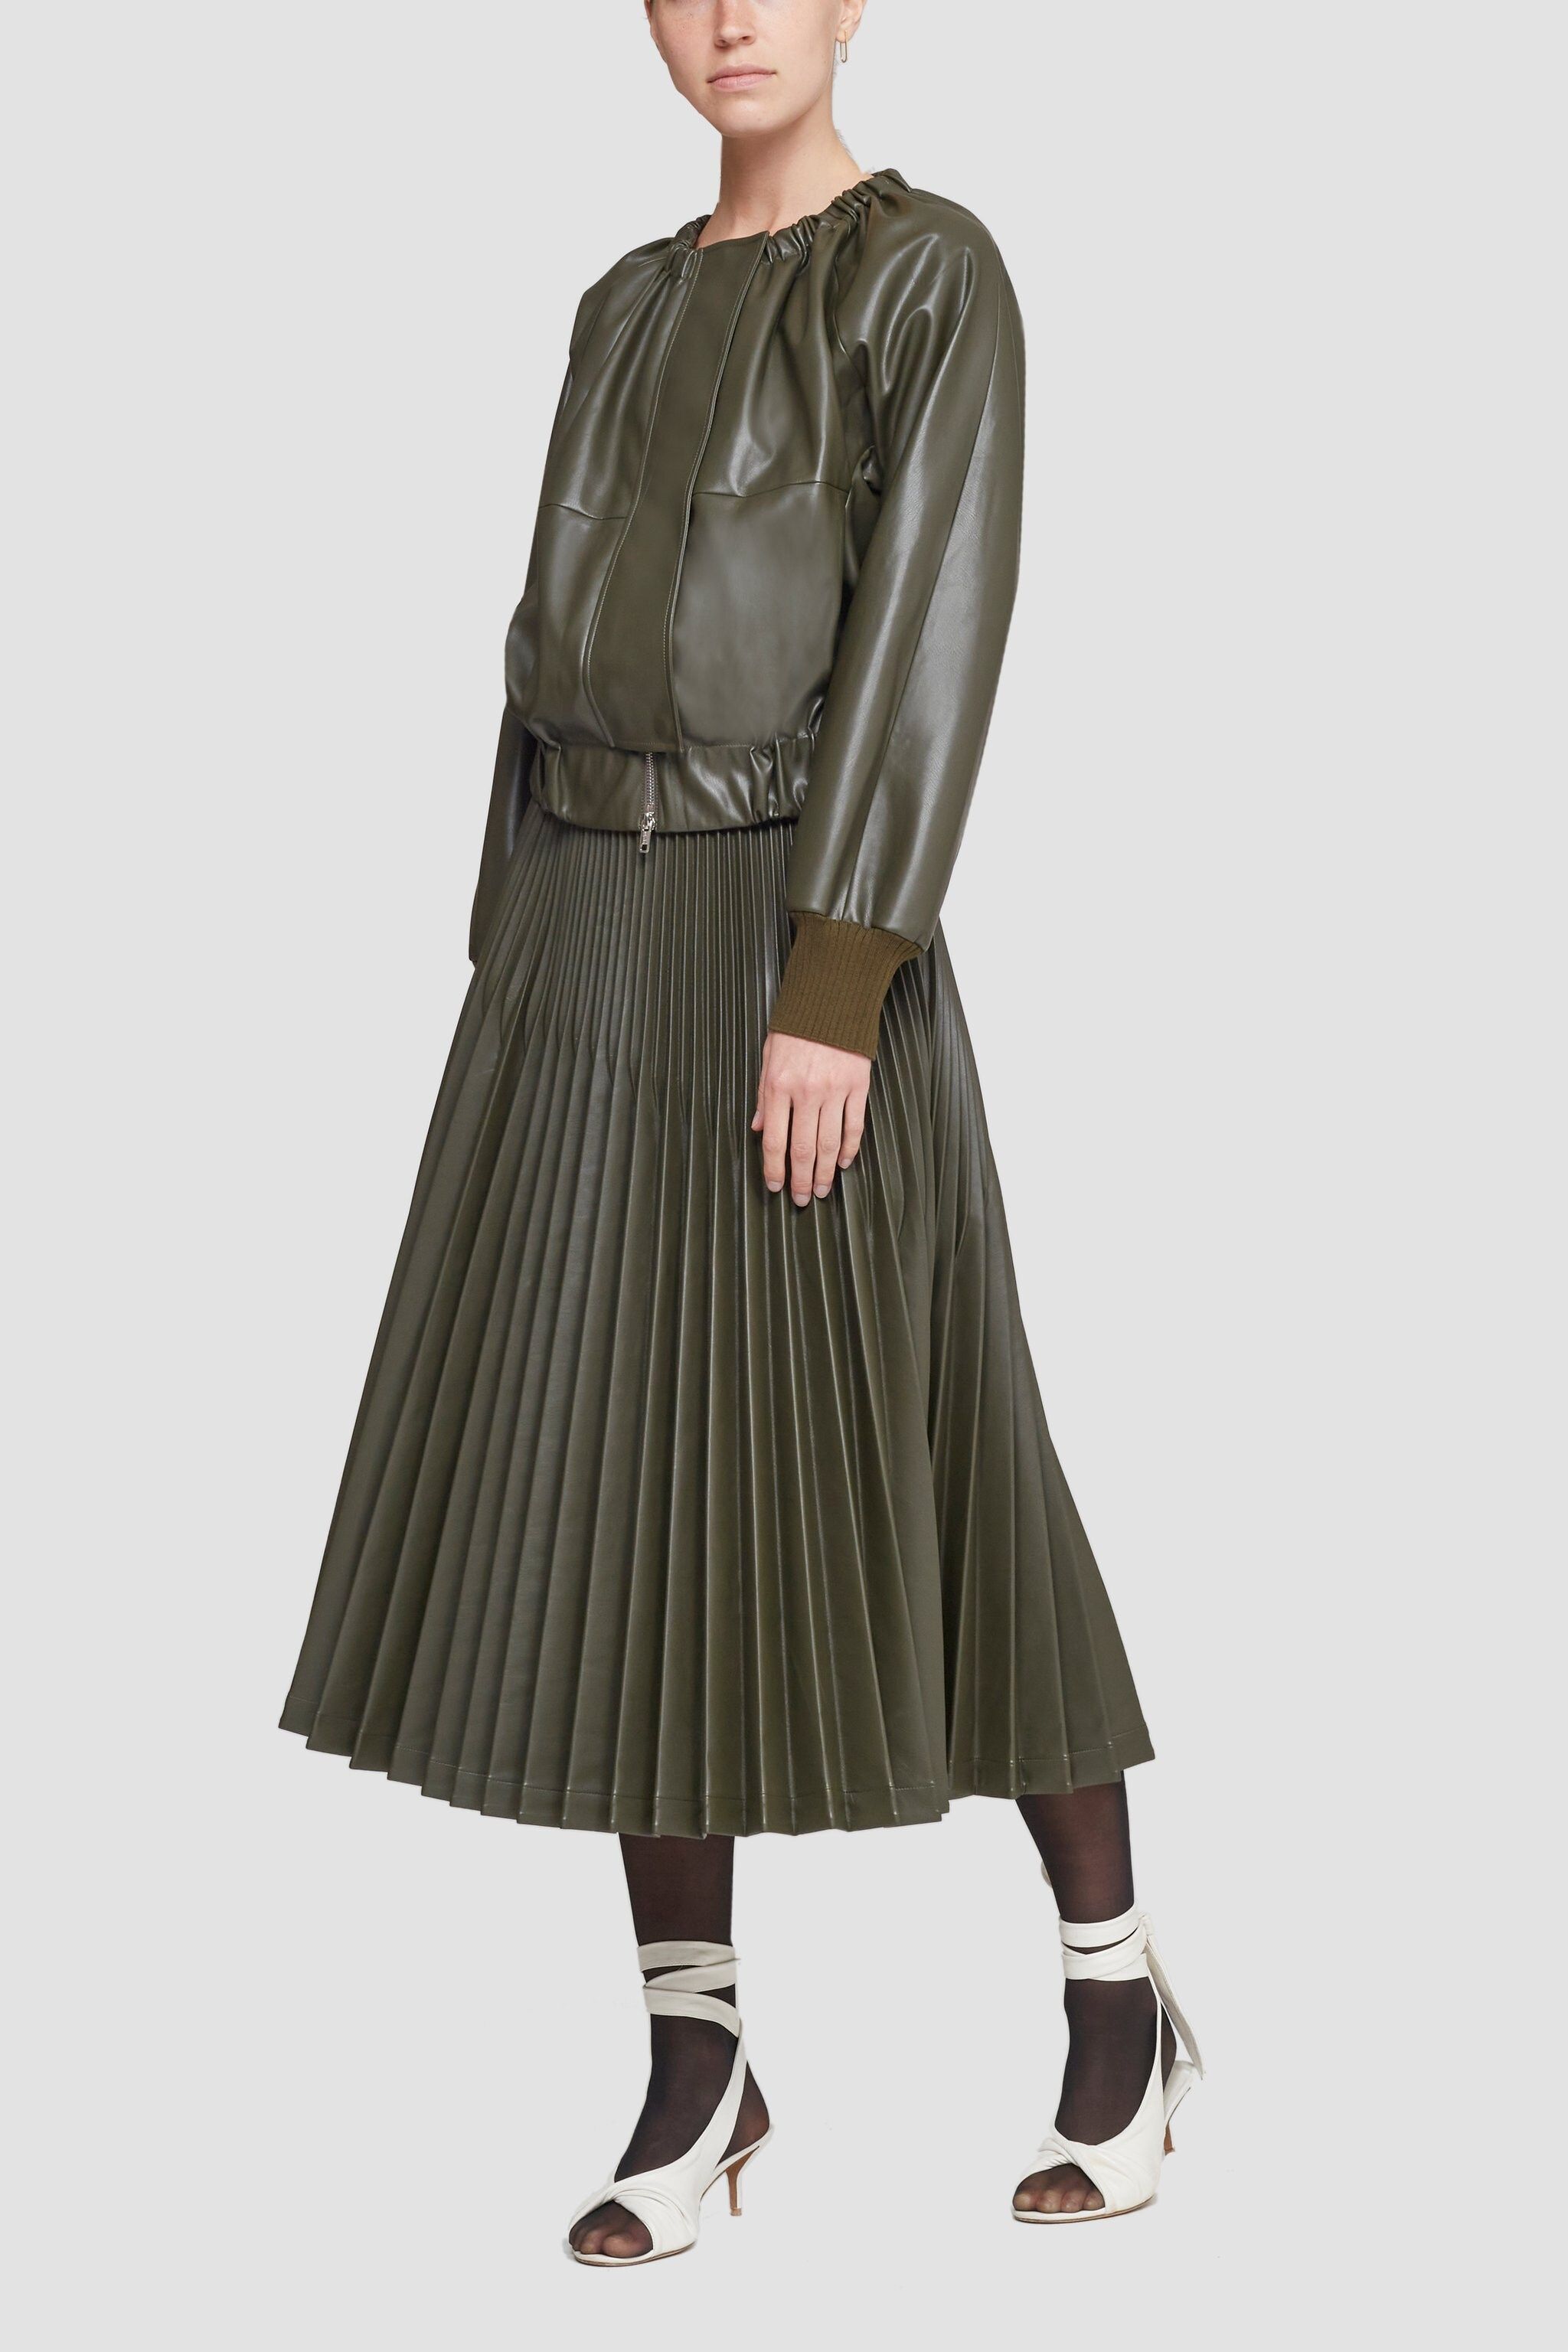 Leather Alternative Sunburst Pleated Skirt | 3.1 Phillip Lim